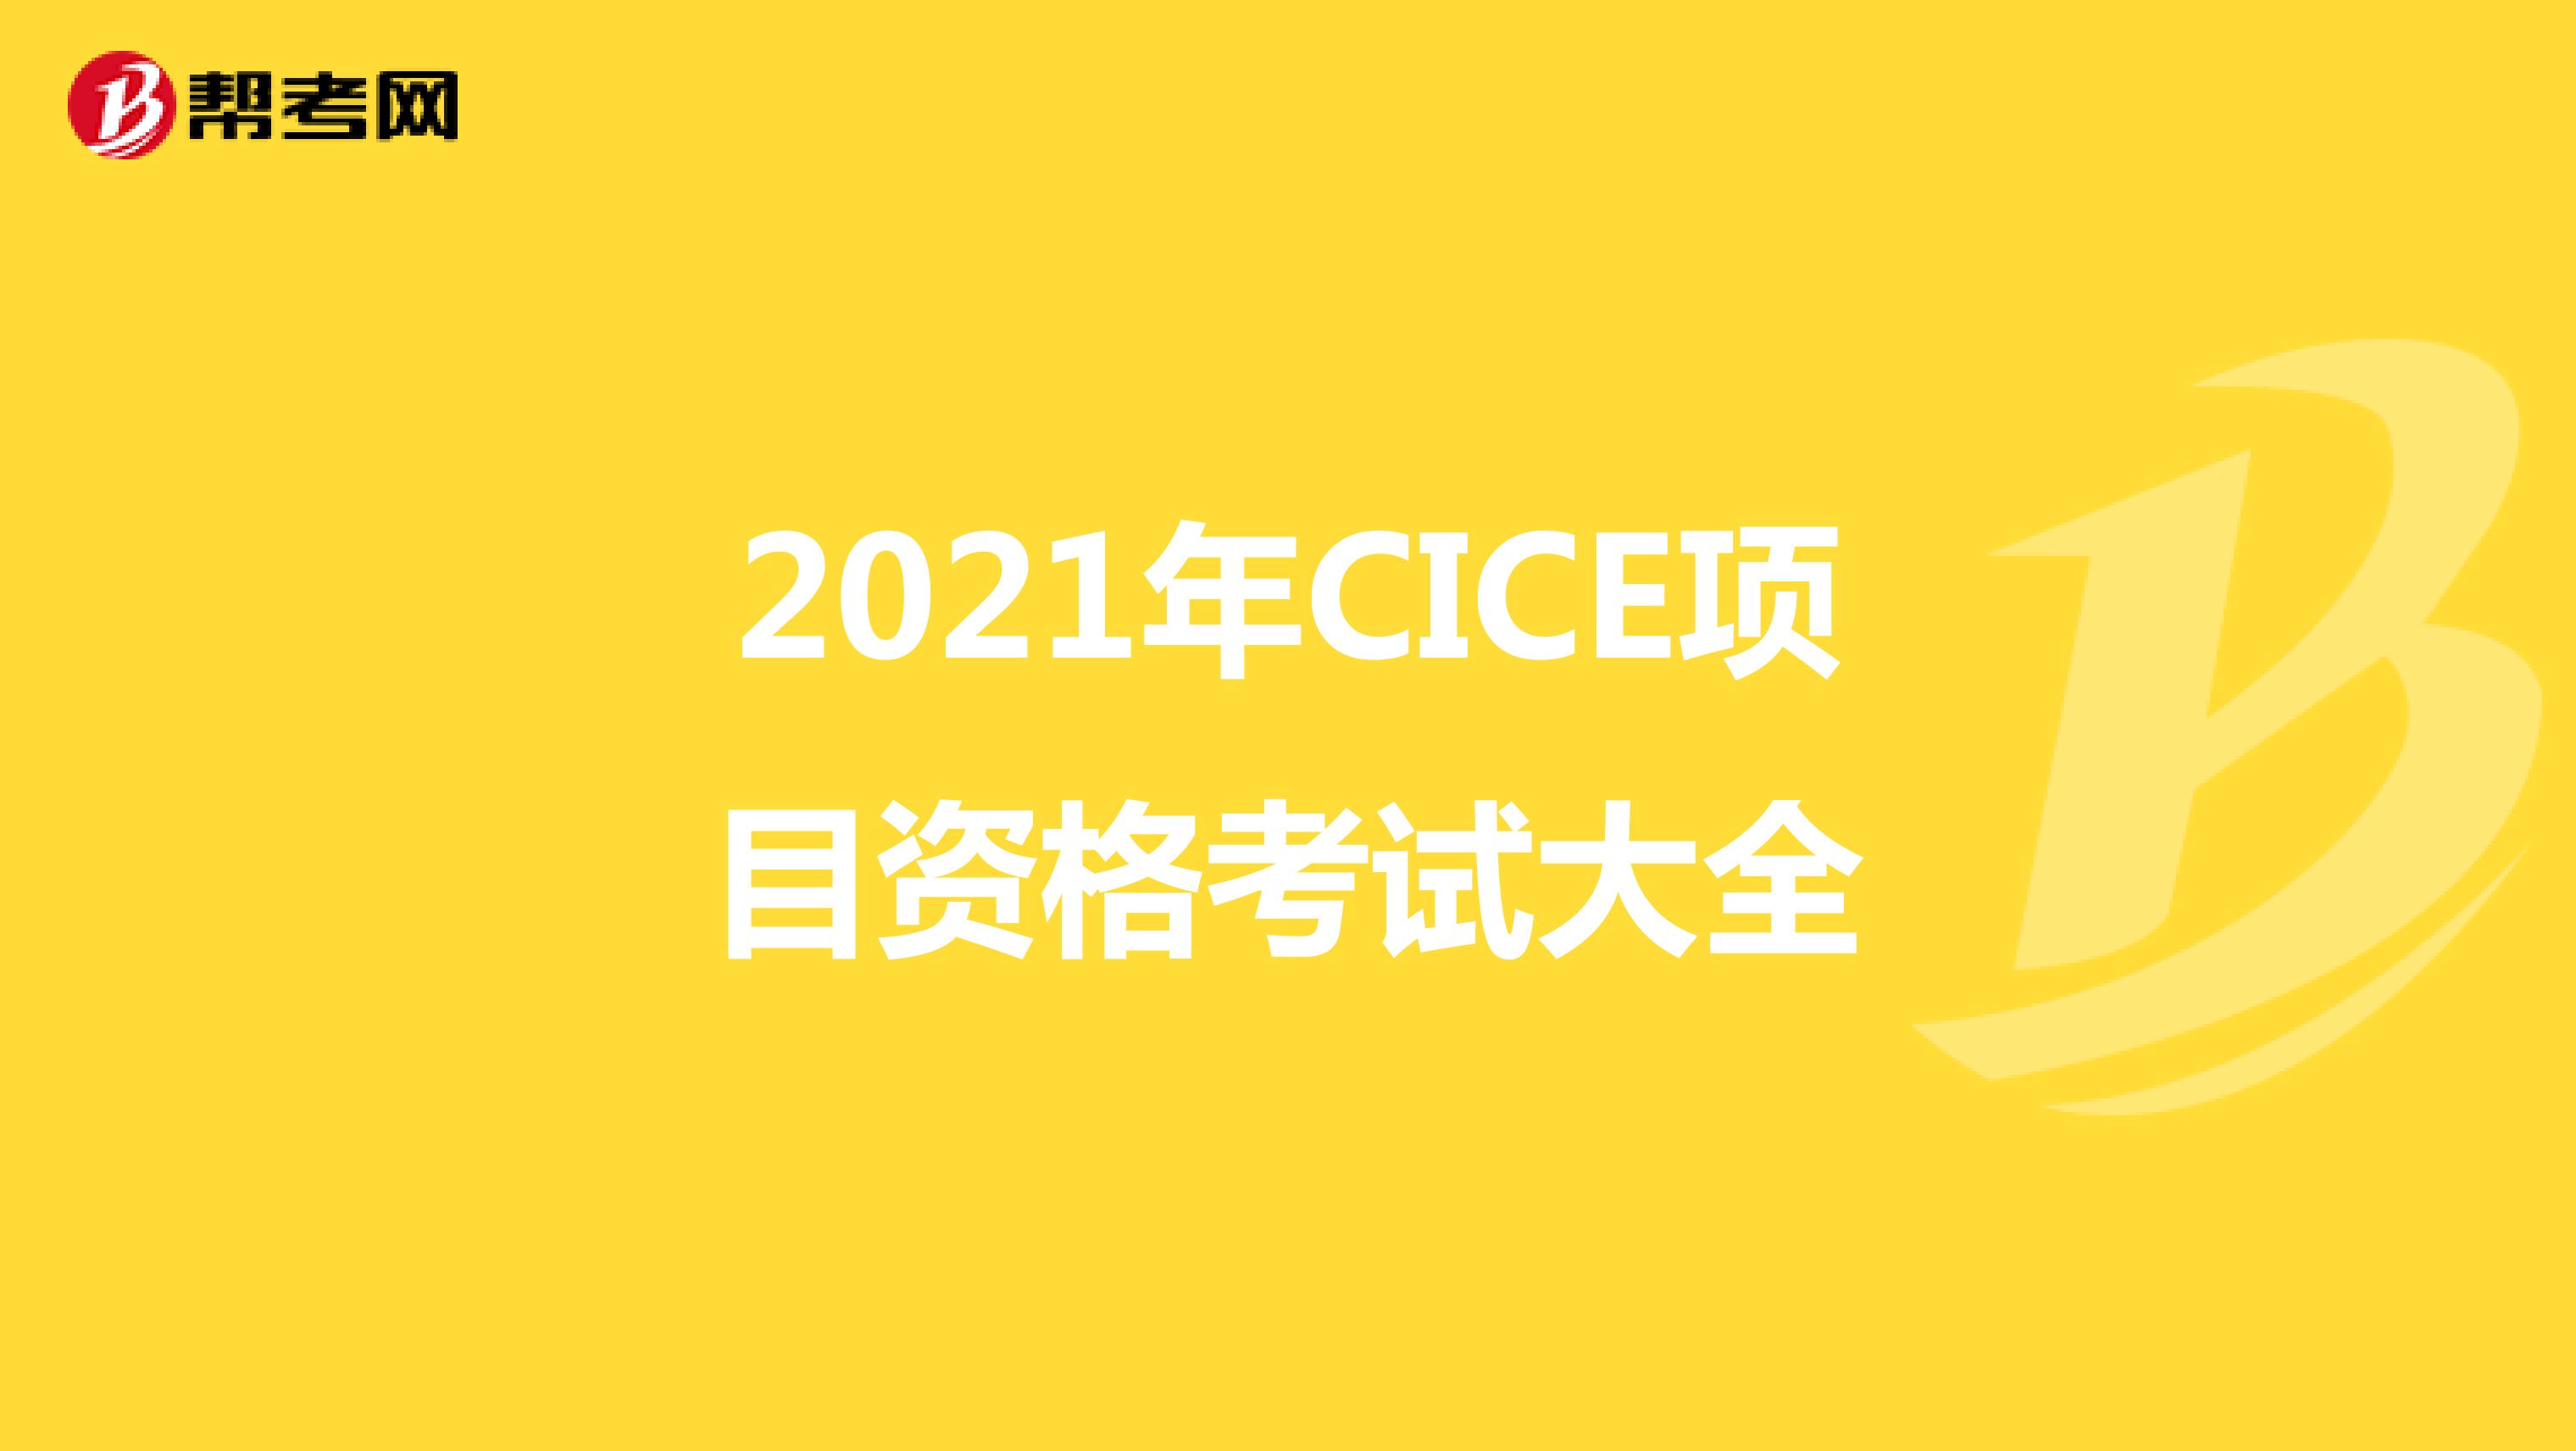 2021年CICE项目资格考试大全